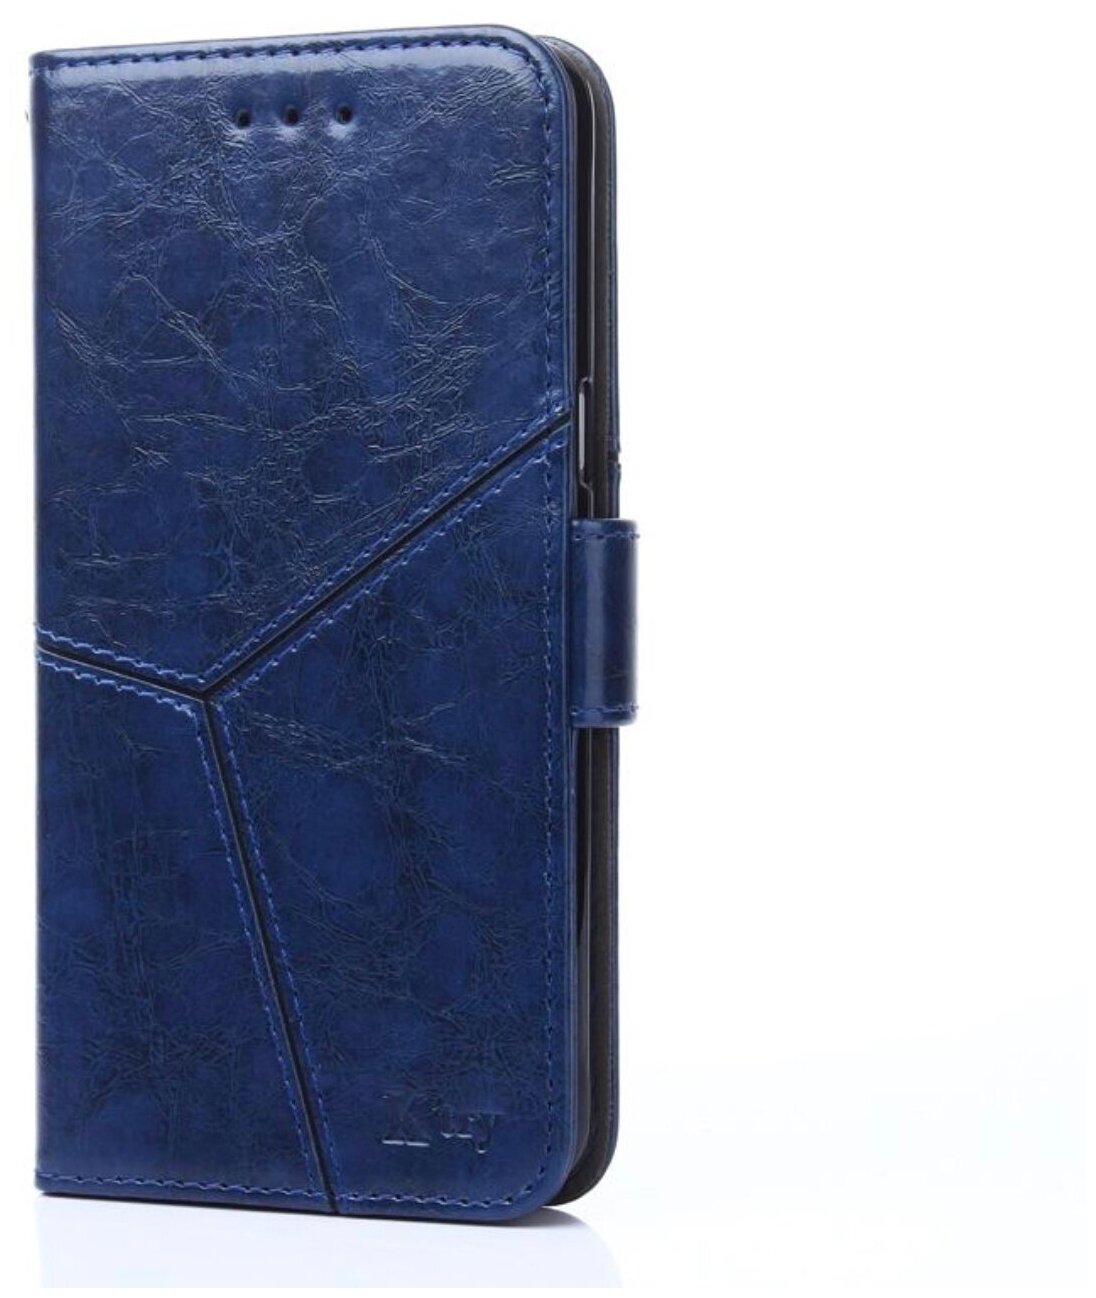 Чехол-книжка Чехол. ру для Samsung Galaxy A20e прошитый по контуру с необычным геометрическим швом синий